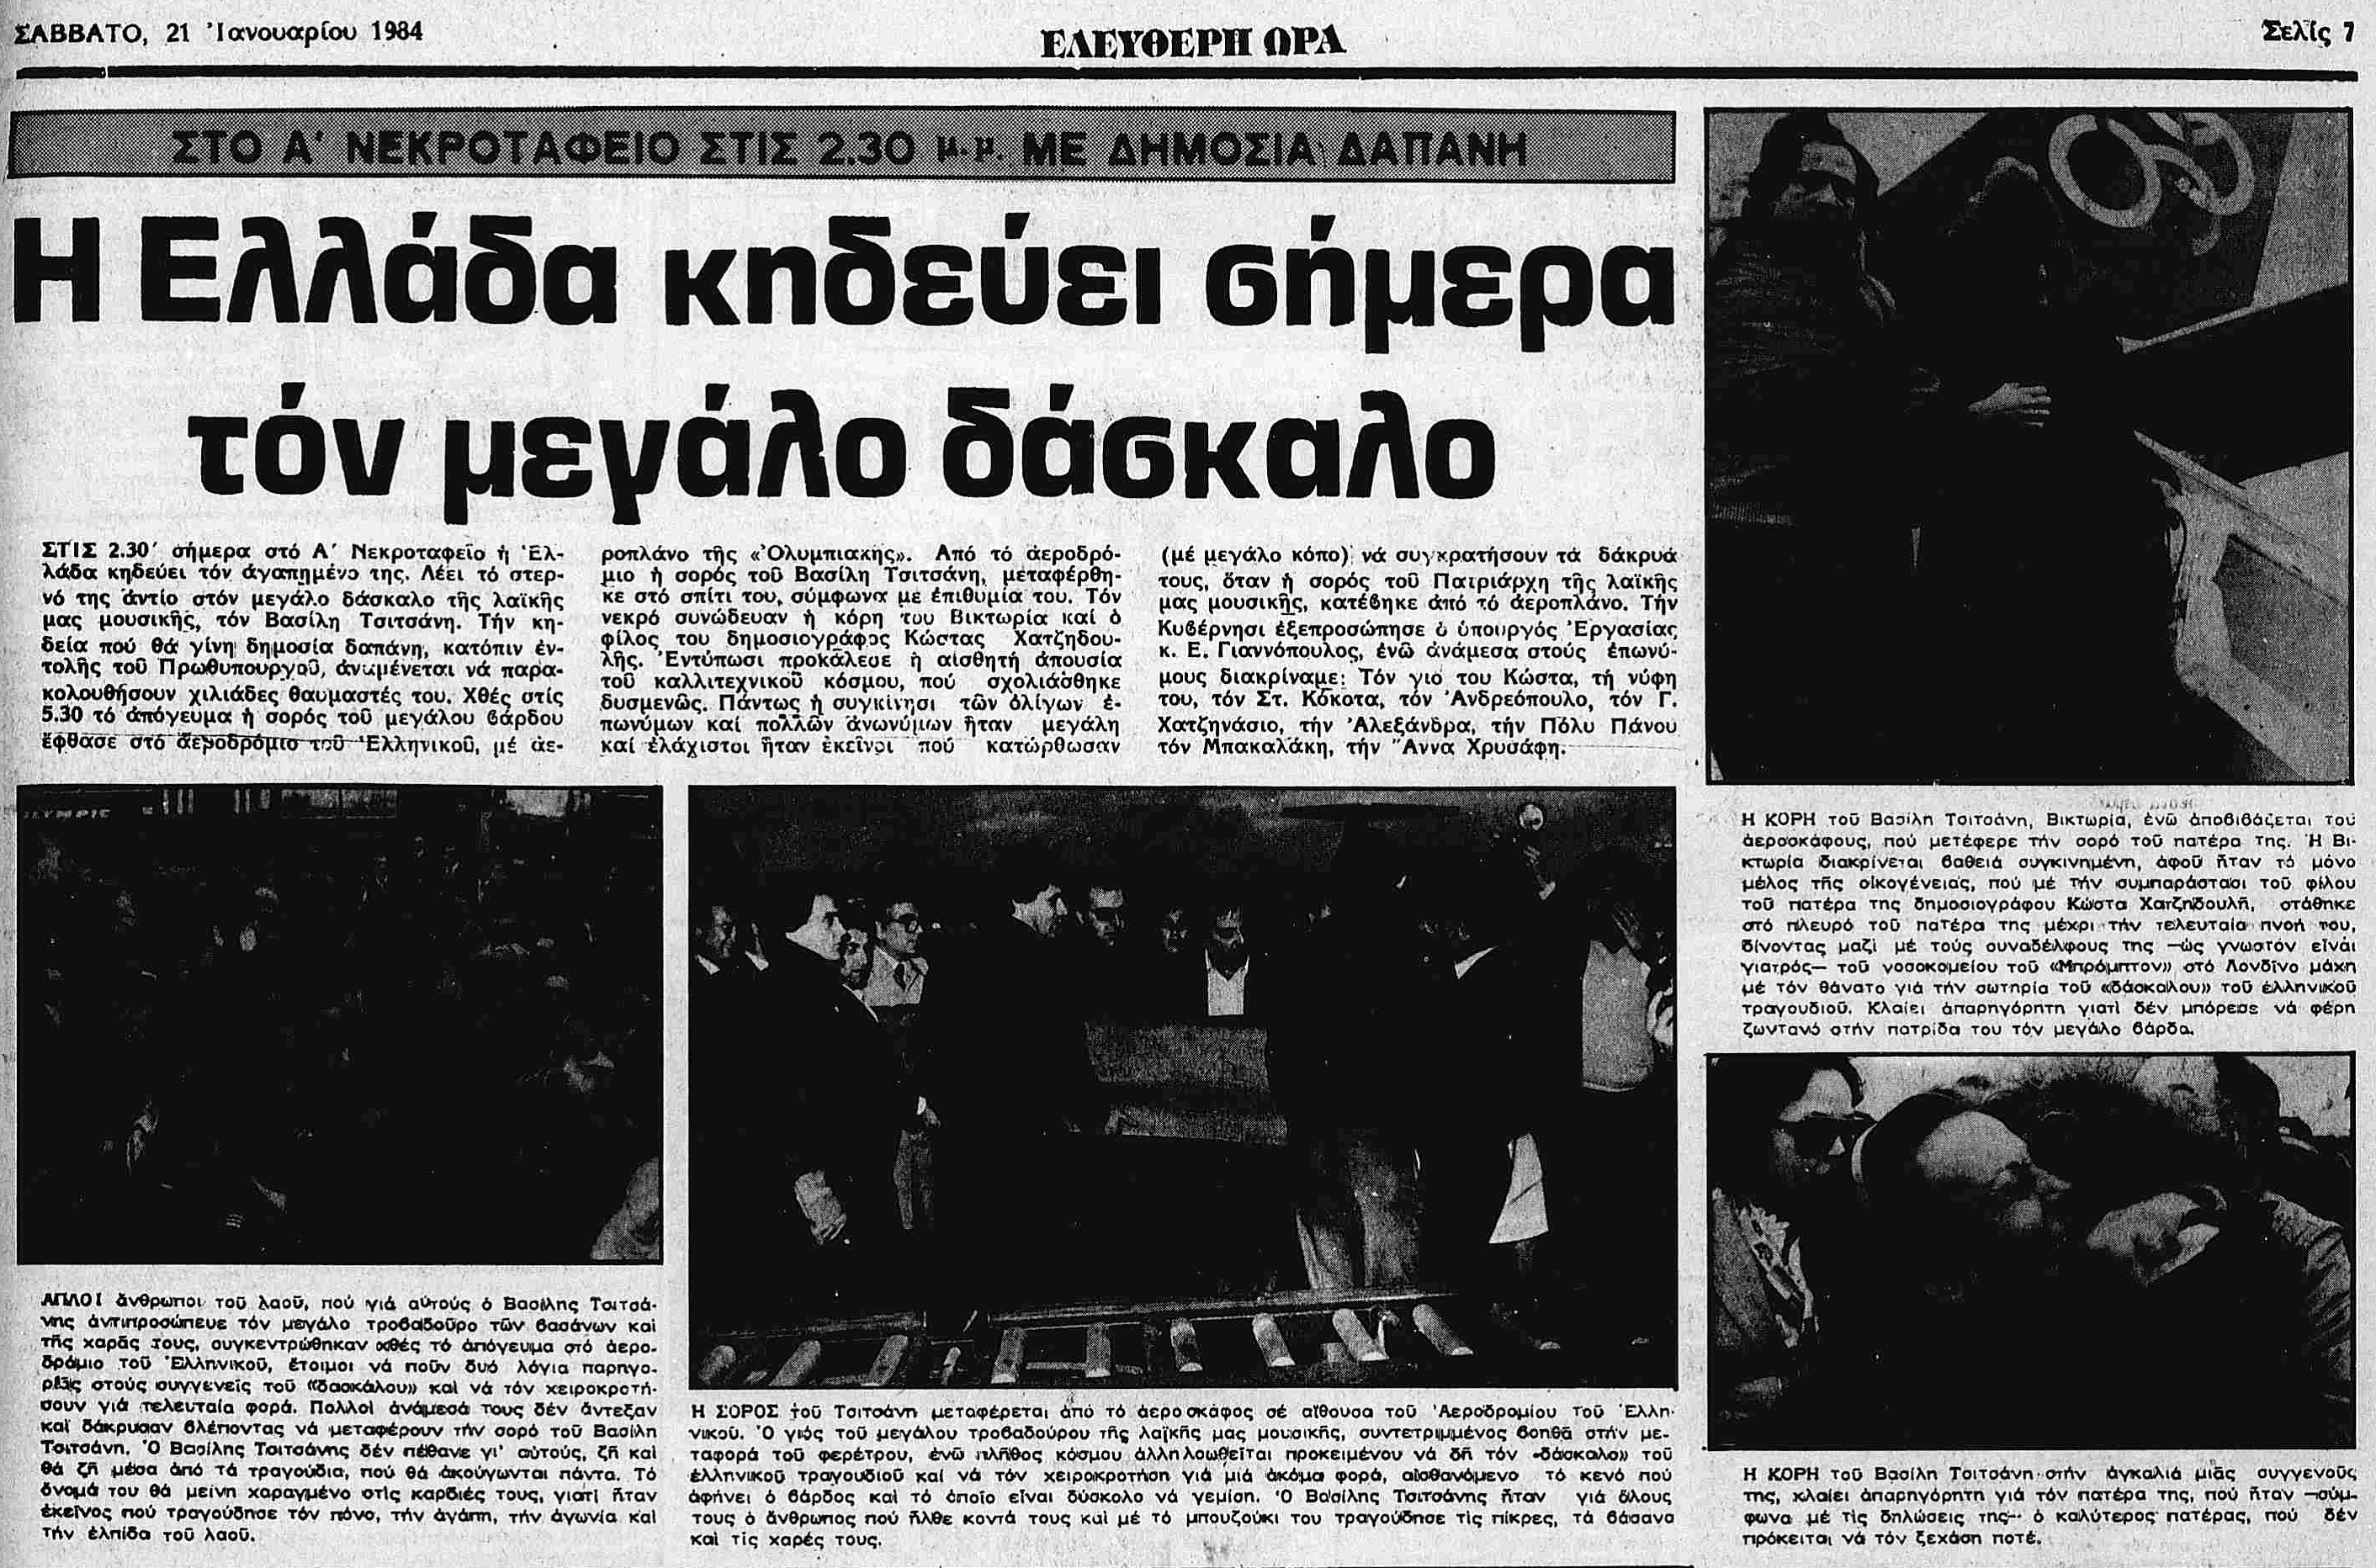 ΕΛΕΥΘΕΡΗ-ΩΡΑ 21-1-1984.png